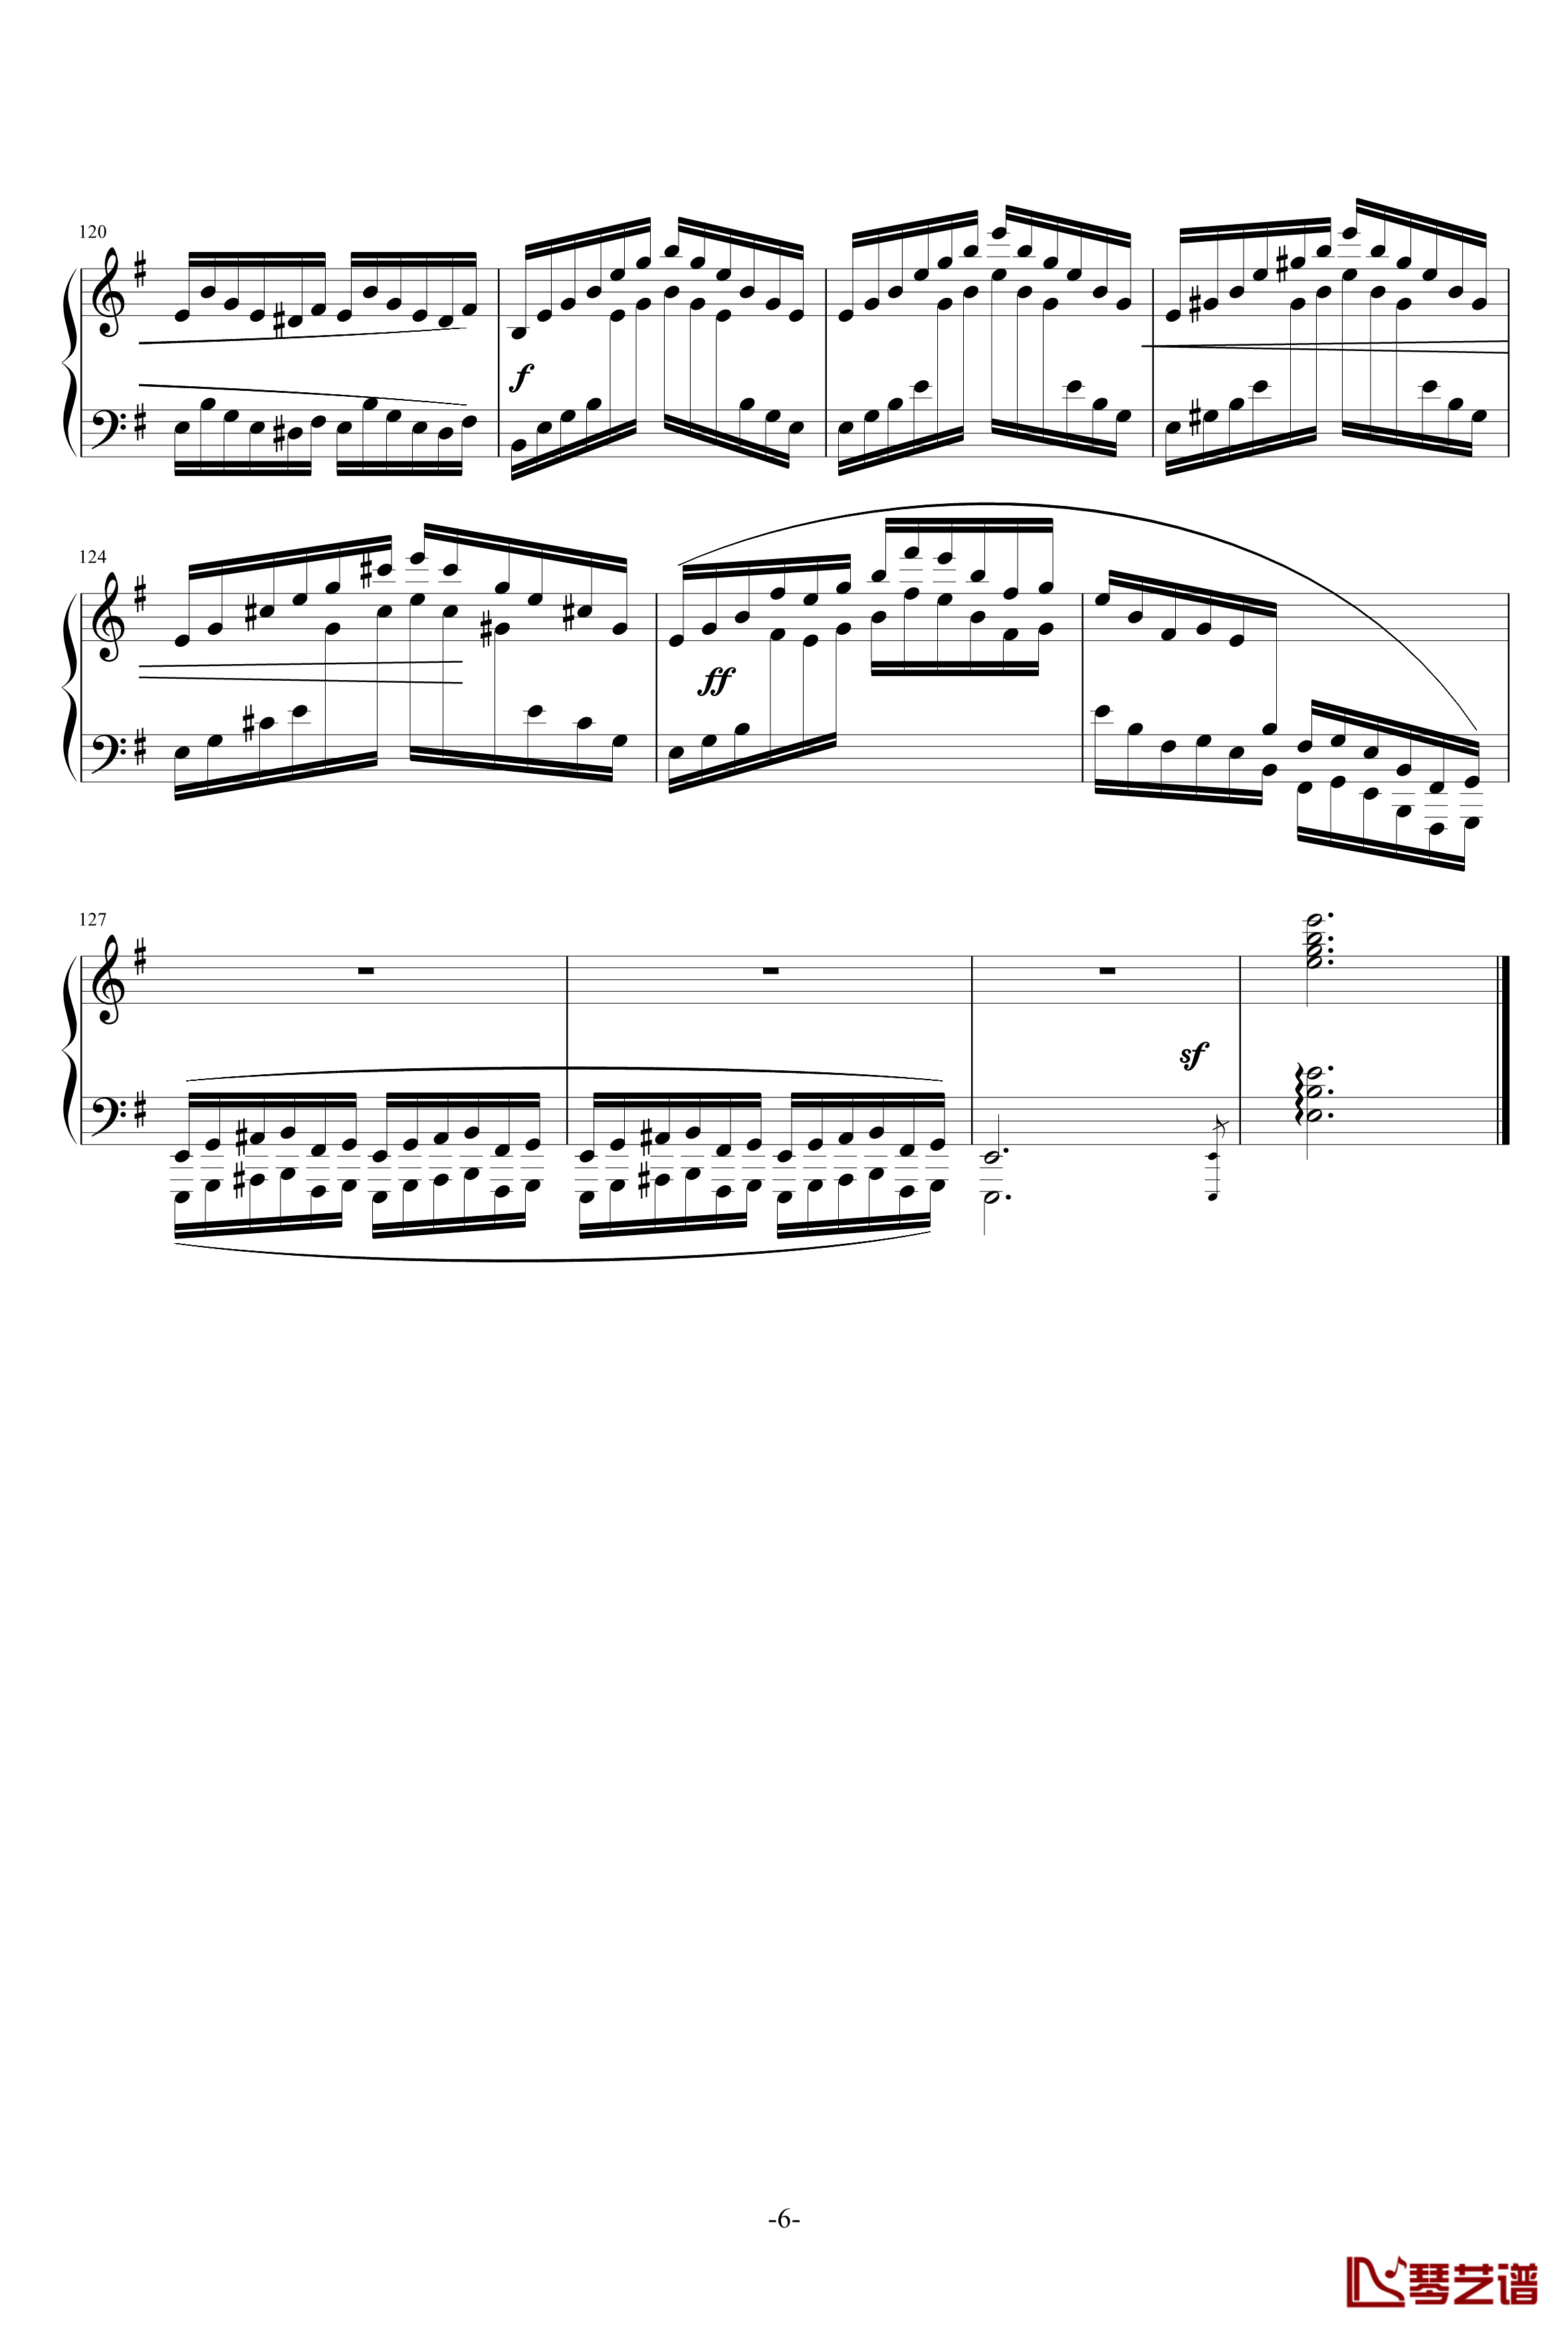 练习曲第1首钢琴谱-乐之琴6